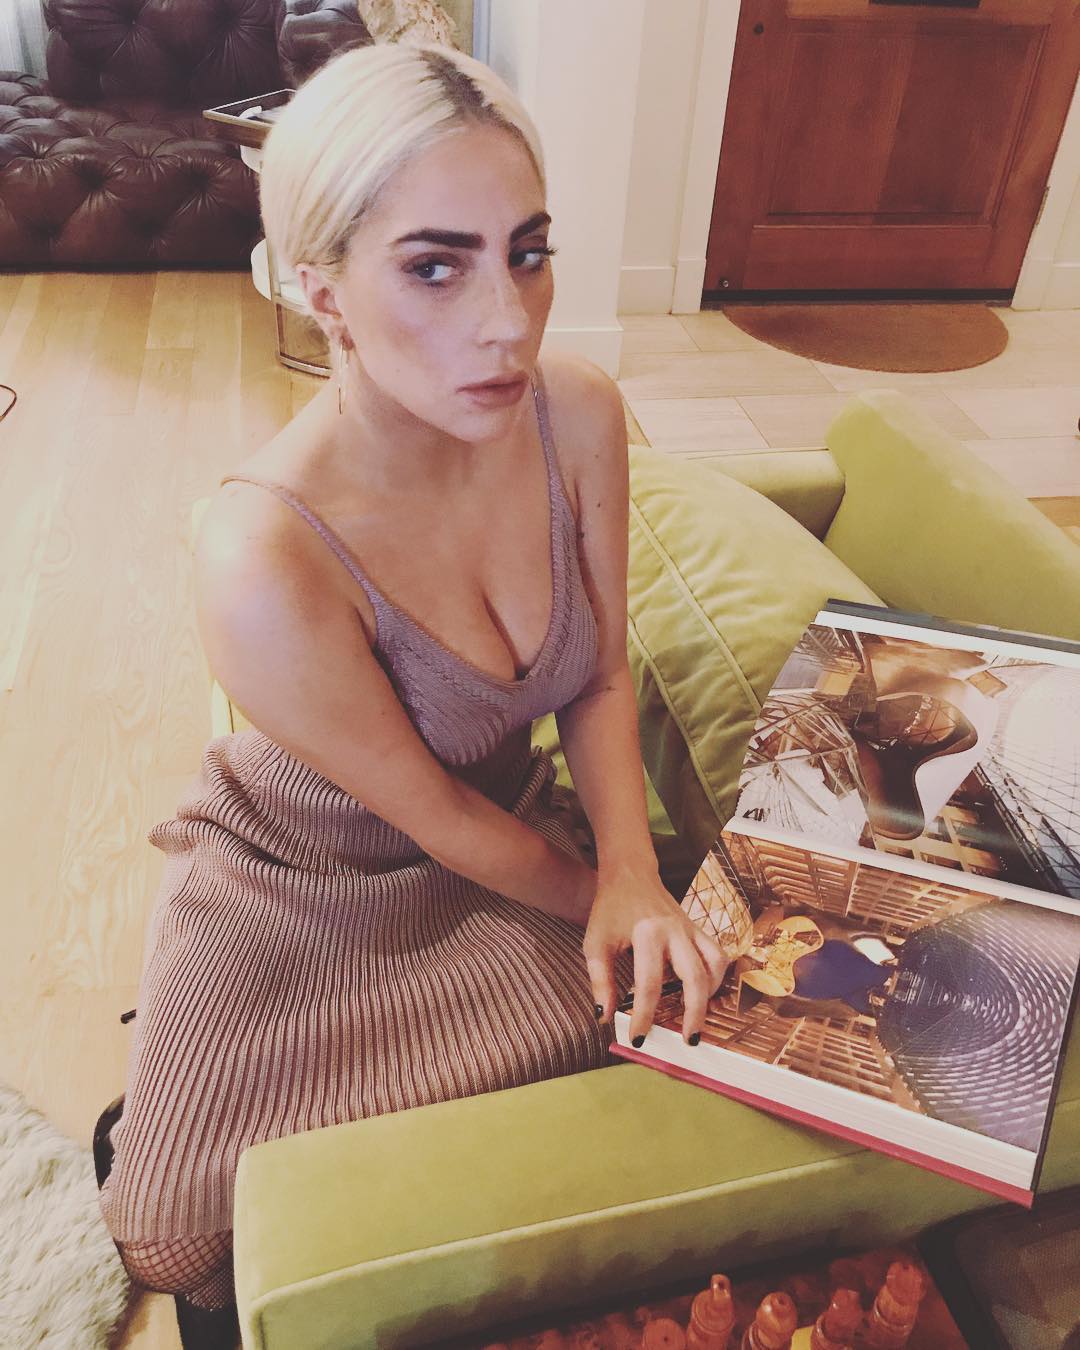 Lady Gaga â€“ Instagram and social media